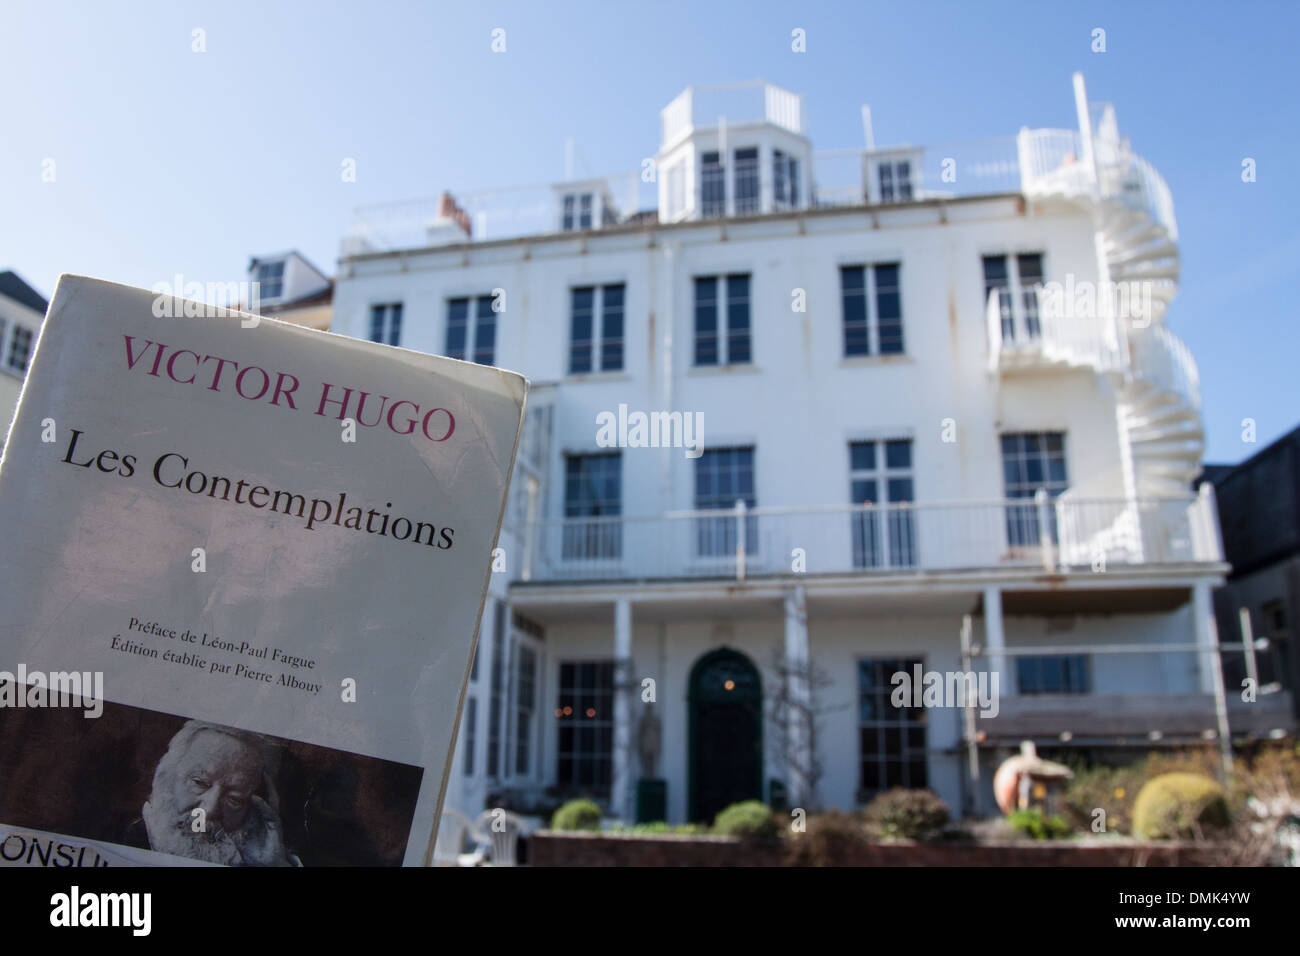 HAUTEVILLE HOUSE, casa acquistata da Victor Hugo grazie al successo del suo lavoro "Les contemplations'Äô e dove ha vissuto durante il suo esilio, Guernsey, ISOLE DEL CANALE Foto Stock